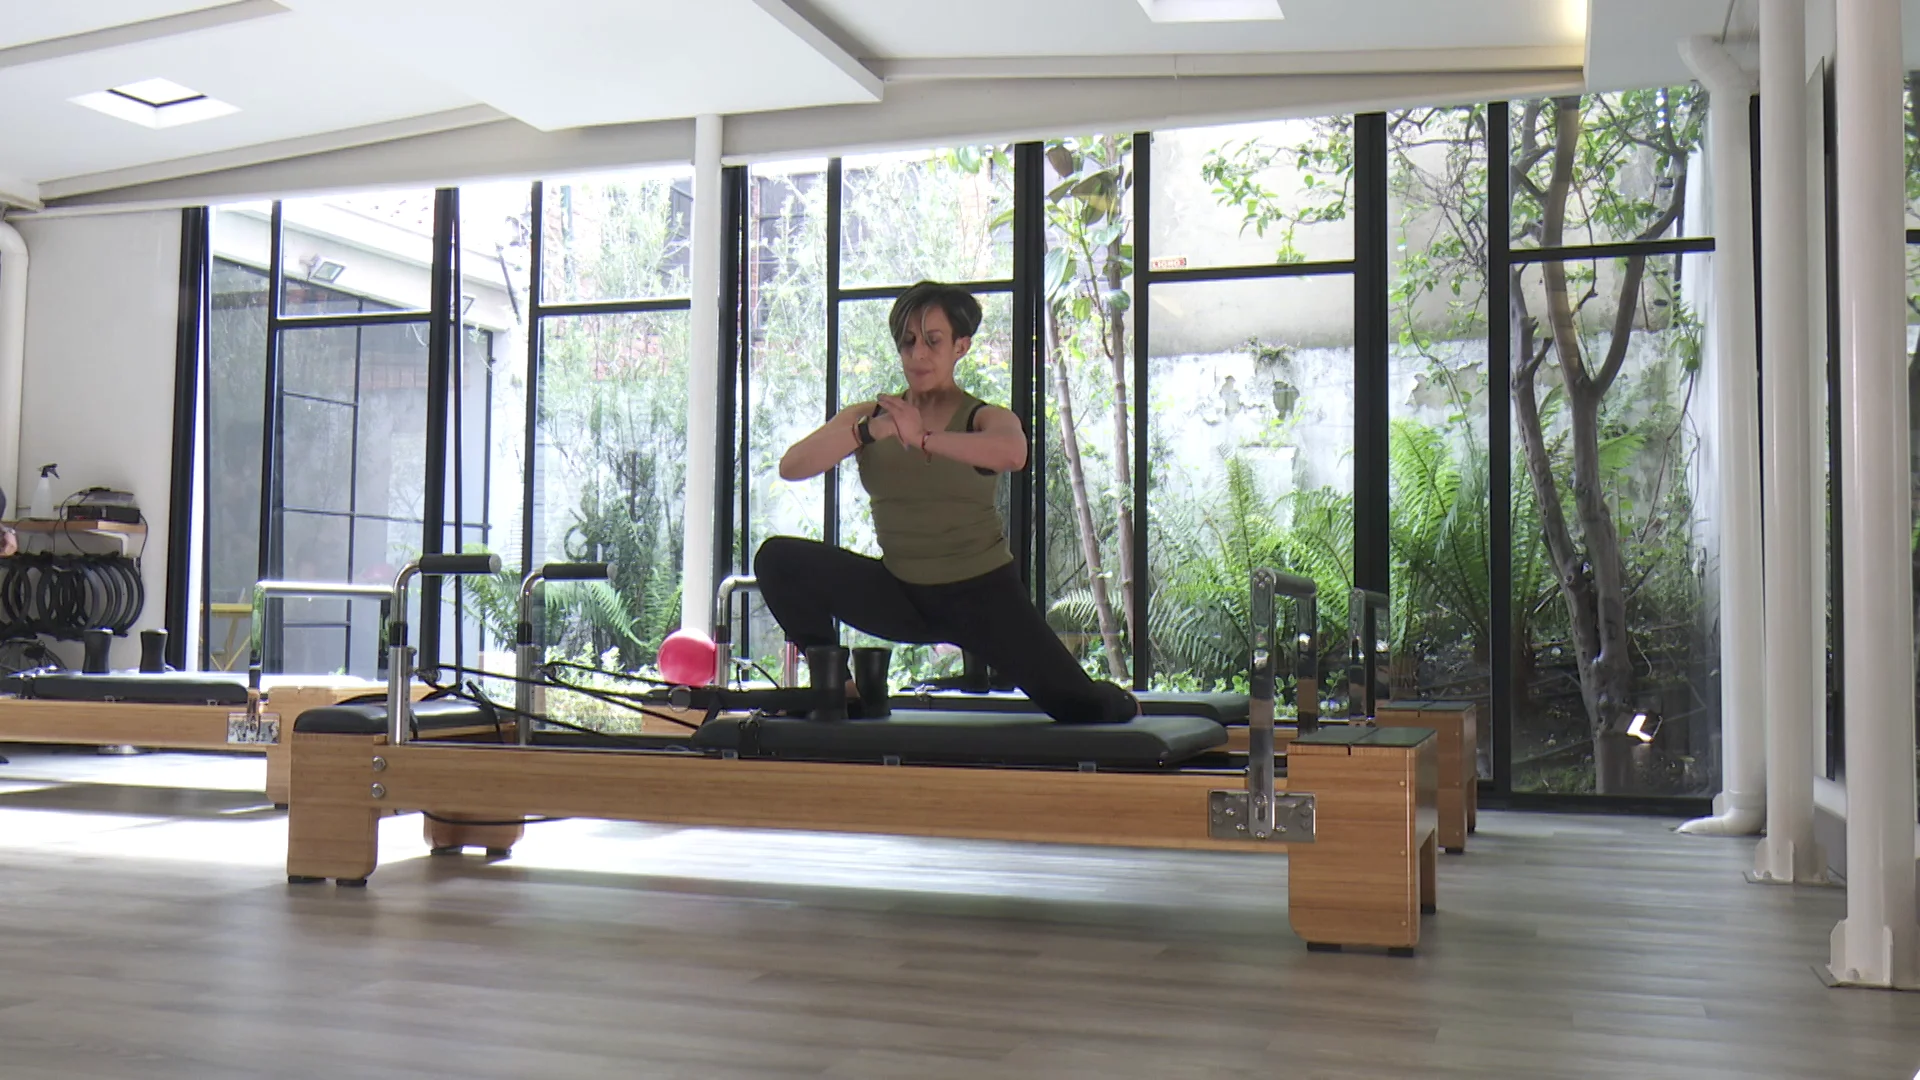 Trabaja la respiración, la relajación, la recuperación muscular y el estiramiento, con técnicas de Yoga.